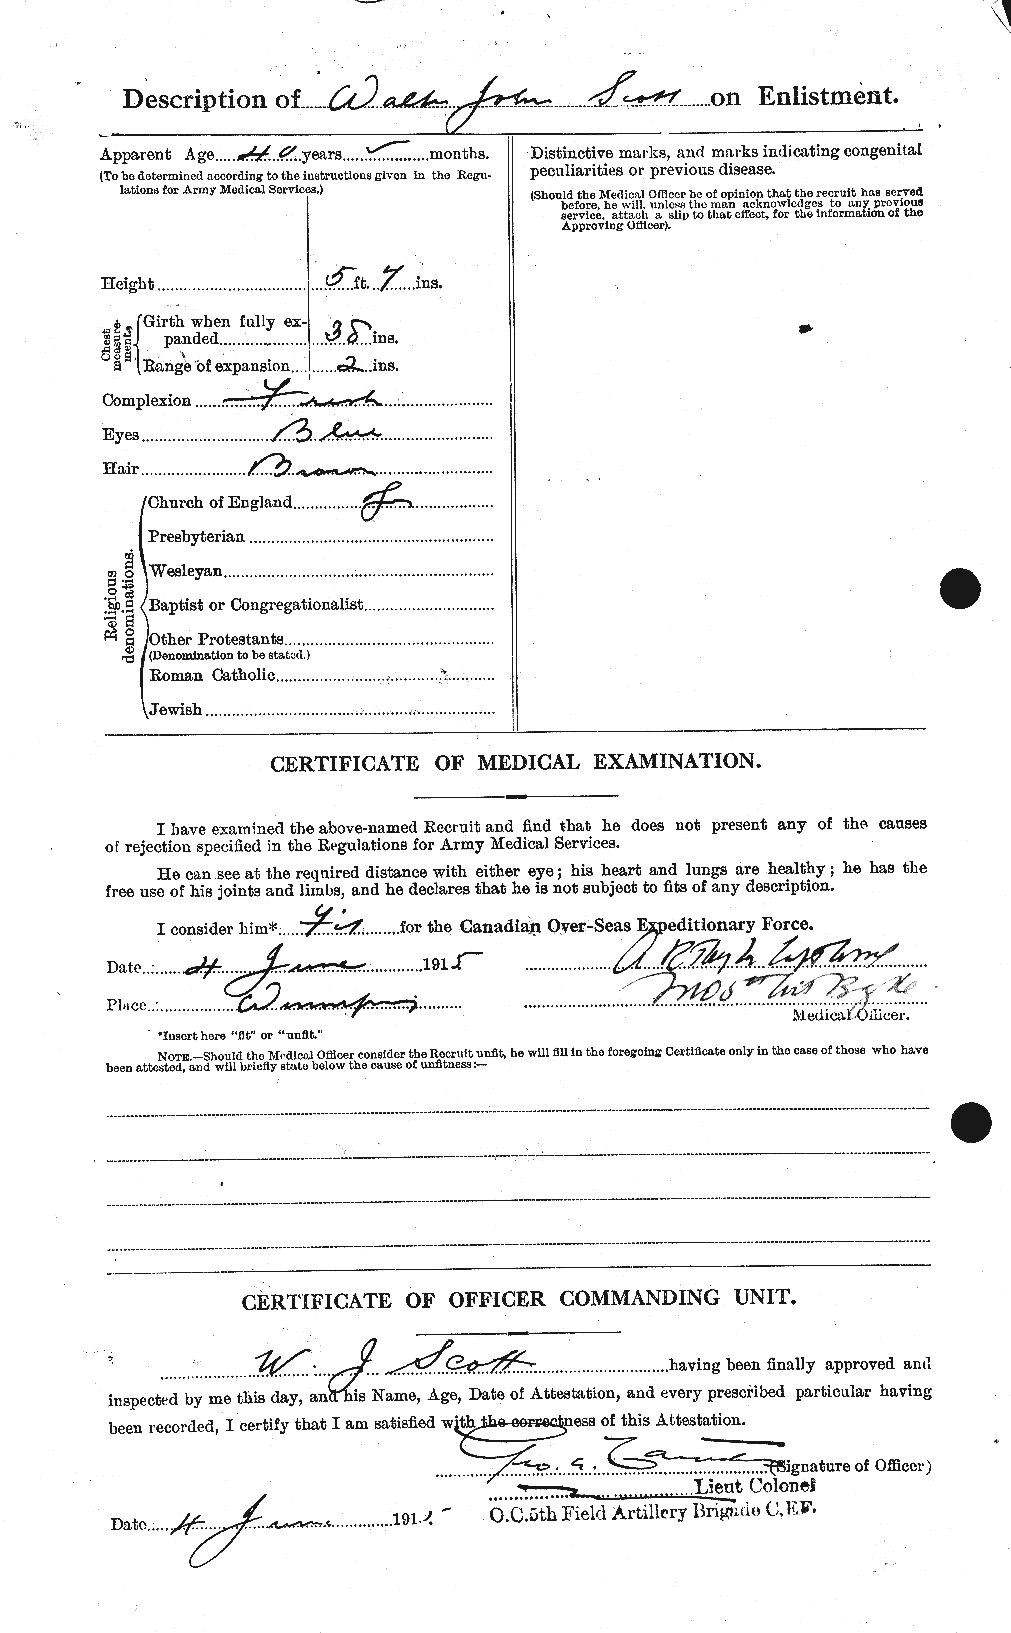 Dossiers du Personnel de la Première Guerre mondiale - CEC 087973b